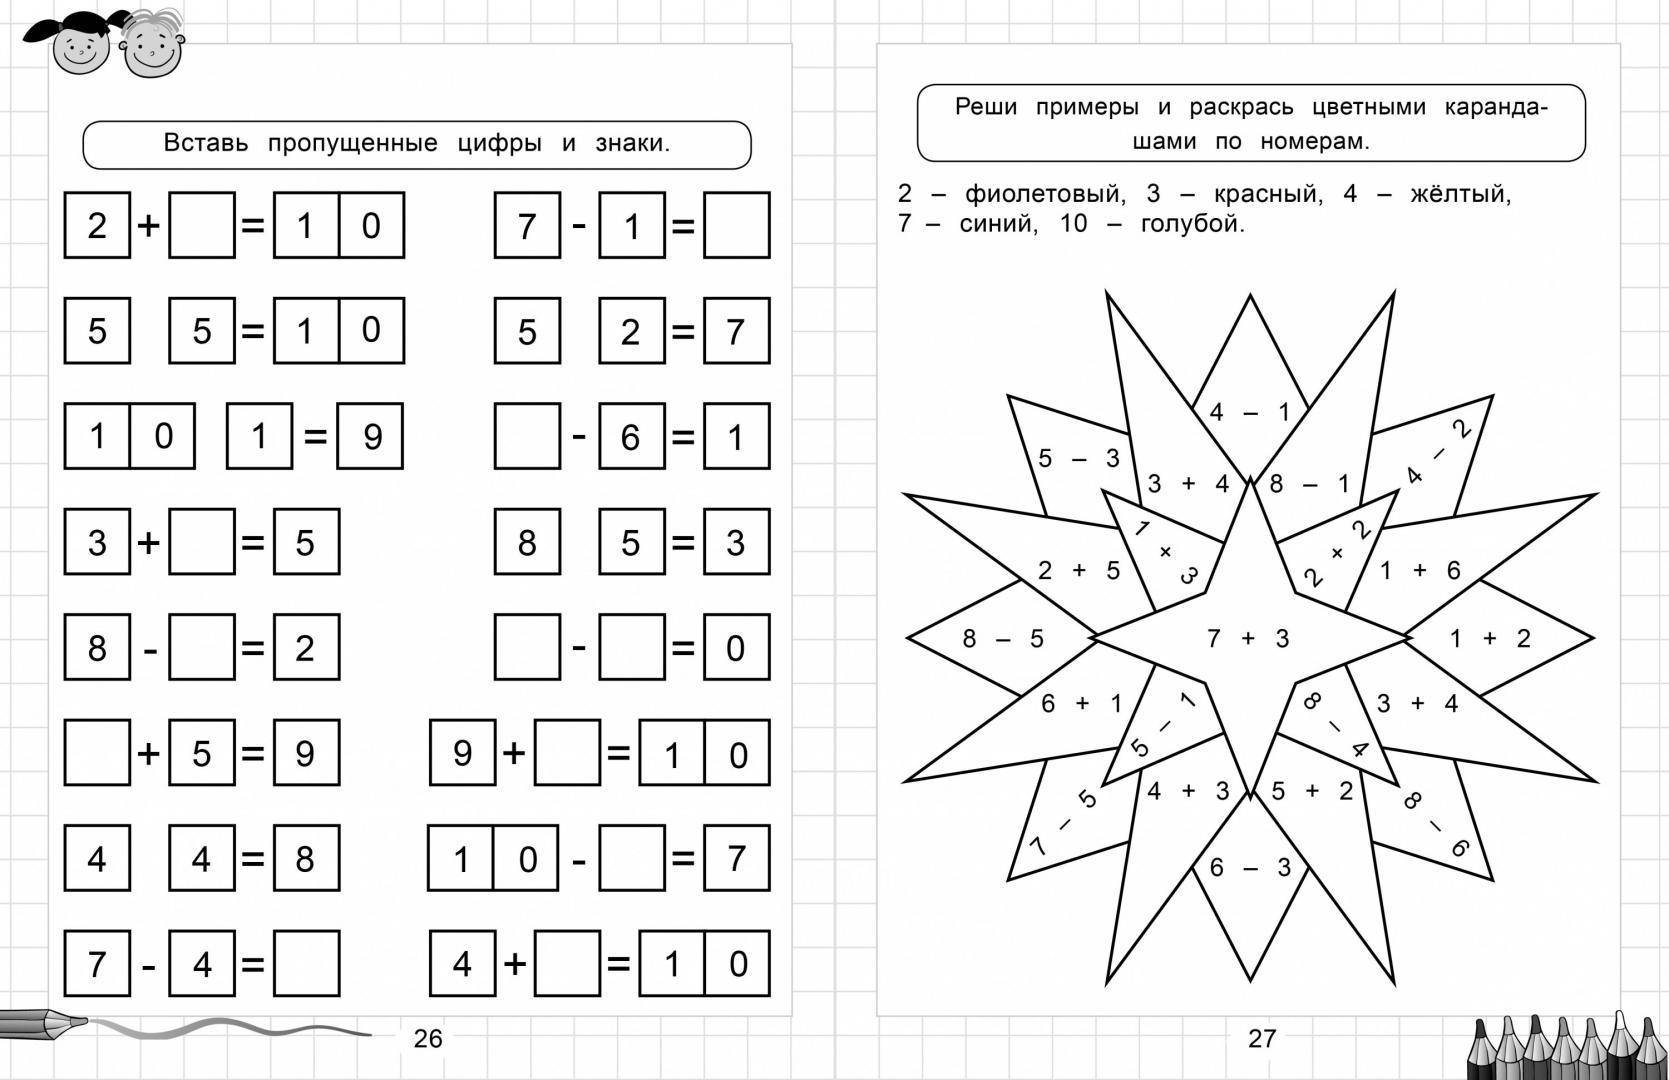 Математика для детей 6-7 лет. веселые задания по математике в картинках для детей